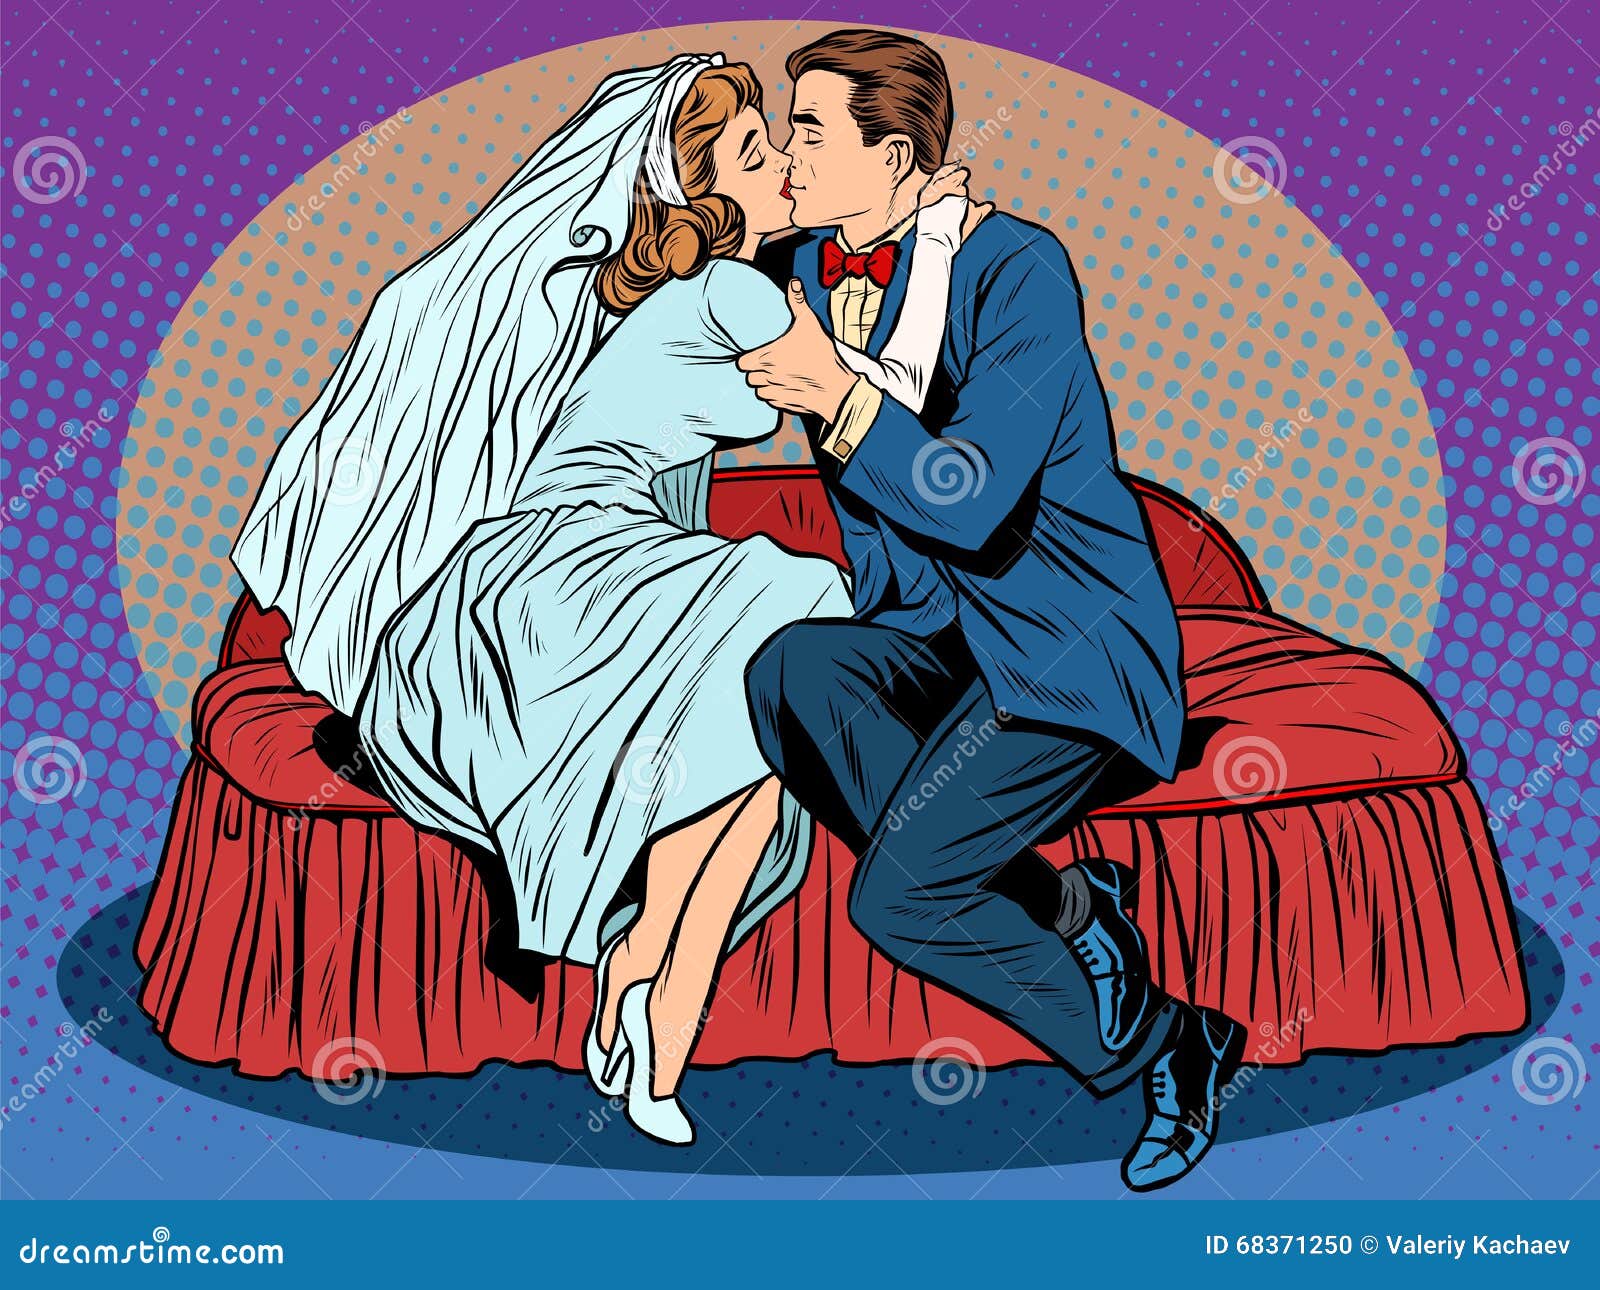 Поиск видео по запросу: Невеста брачная ночь